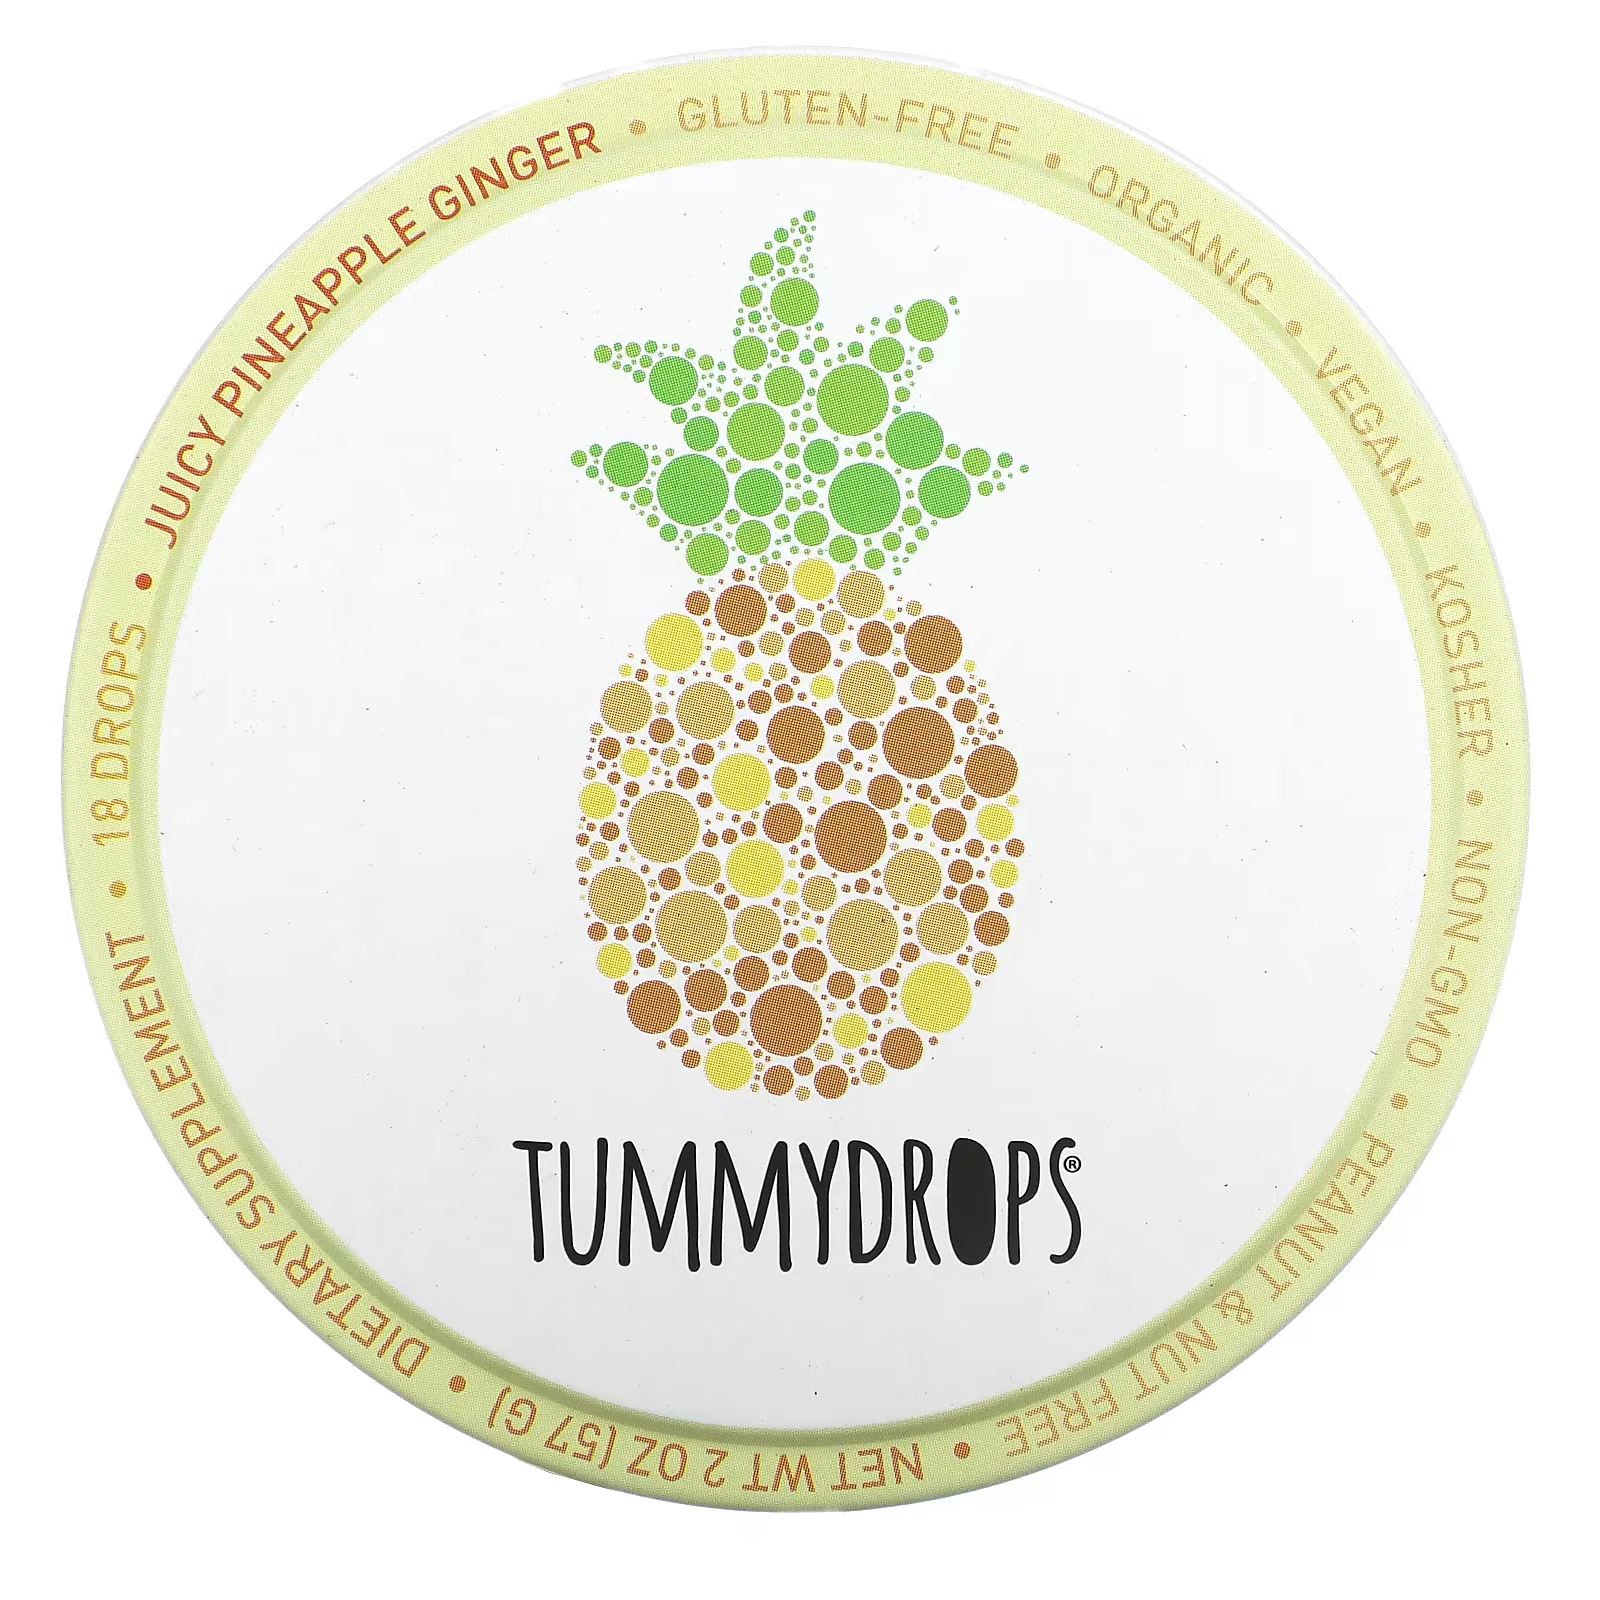 Капли имбирные Tummydrops ананасовые, 18 капель tummydrops enchanted spice интенсивные капли с имбирем 18 капель 57 г 2 унции